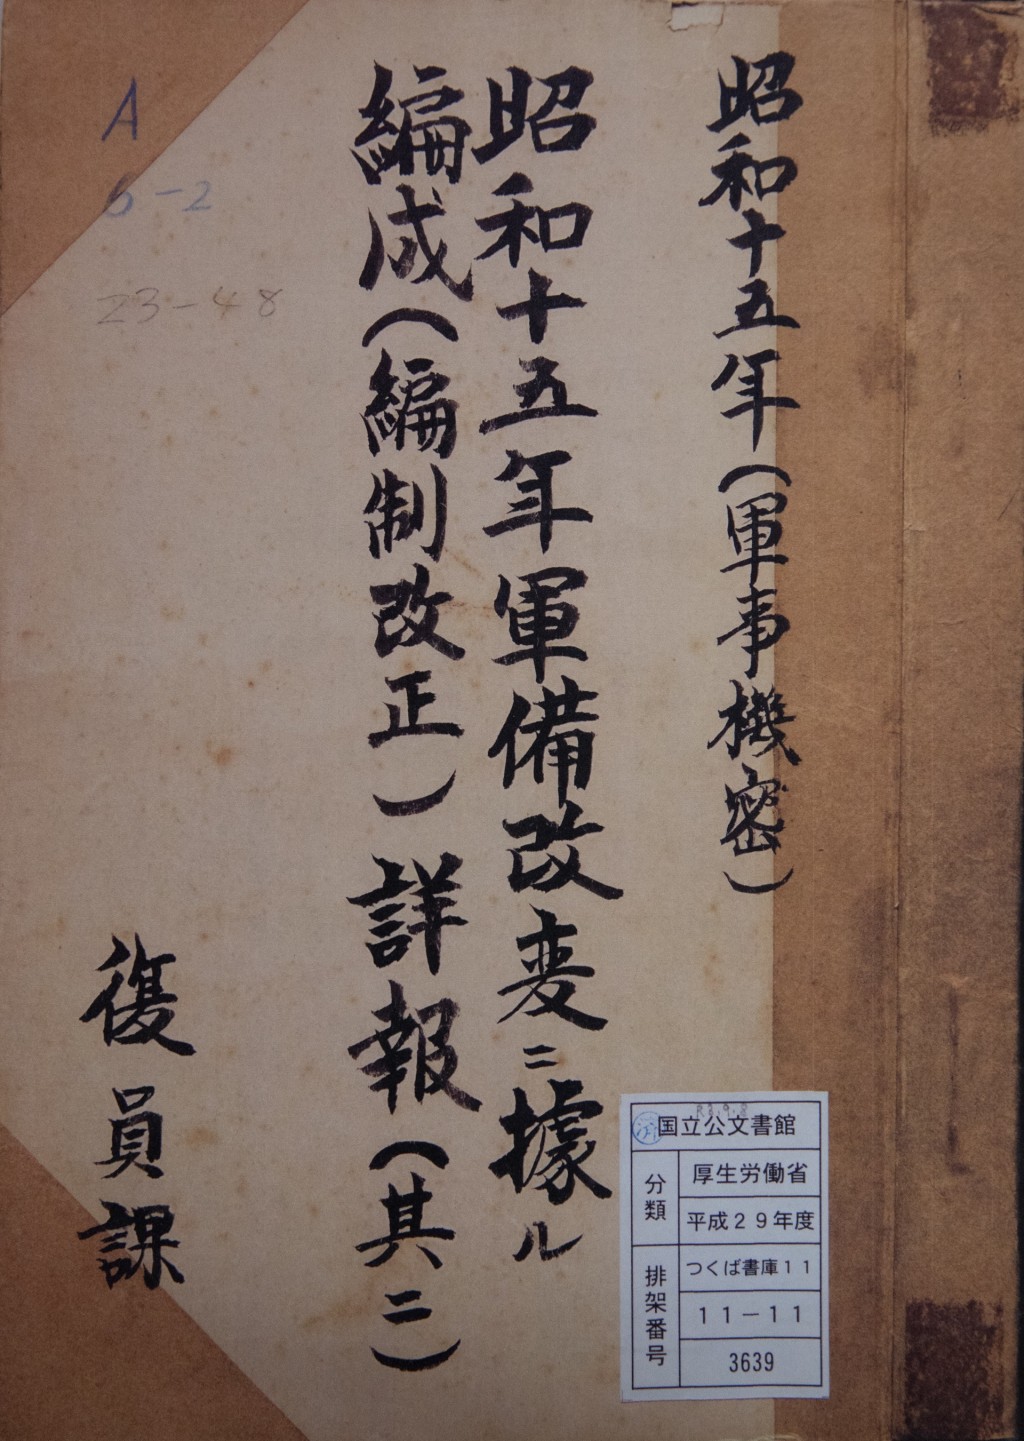 相关文件在日本厚生劳动省移交给国立公文书馆保管的文件中发现。 新华社